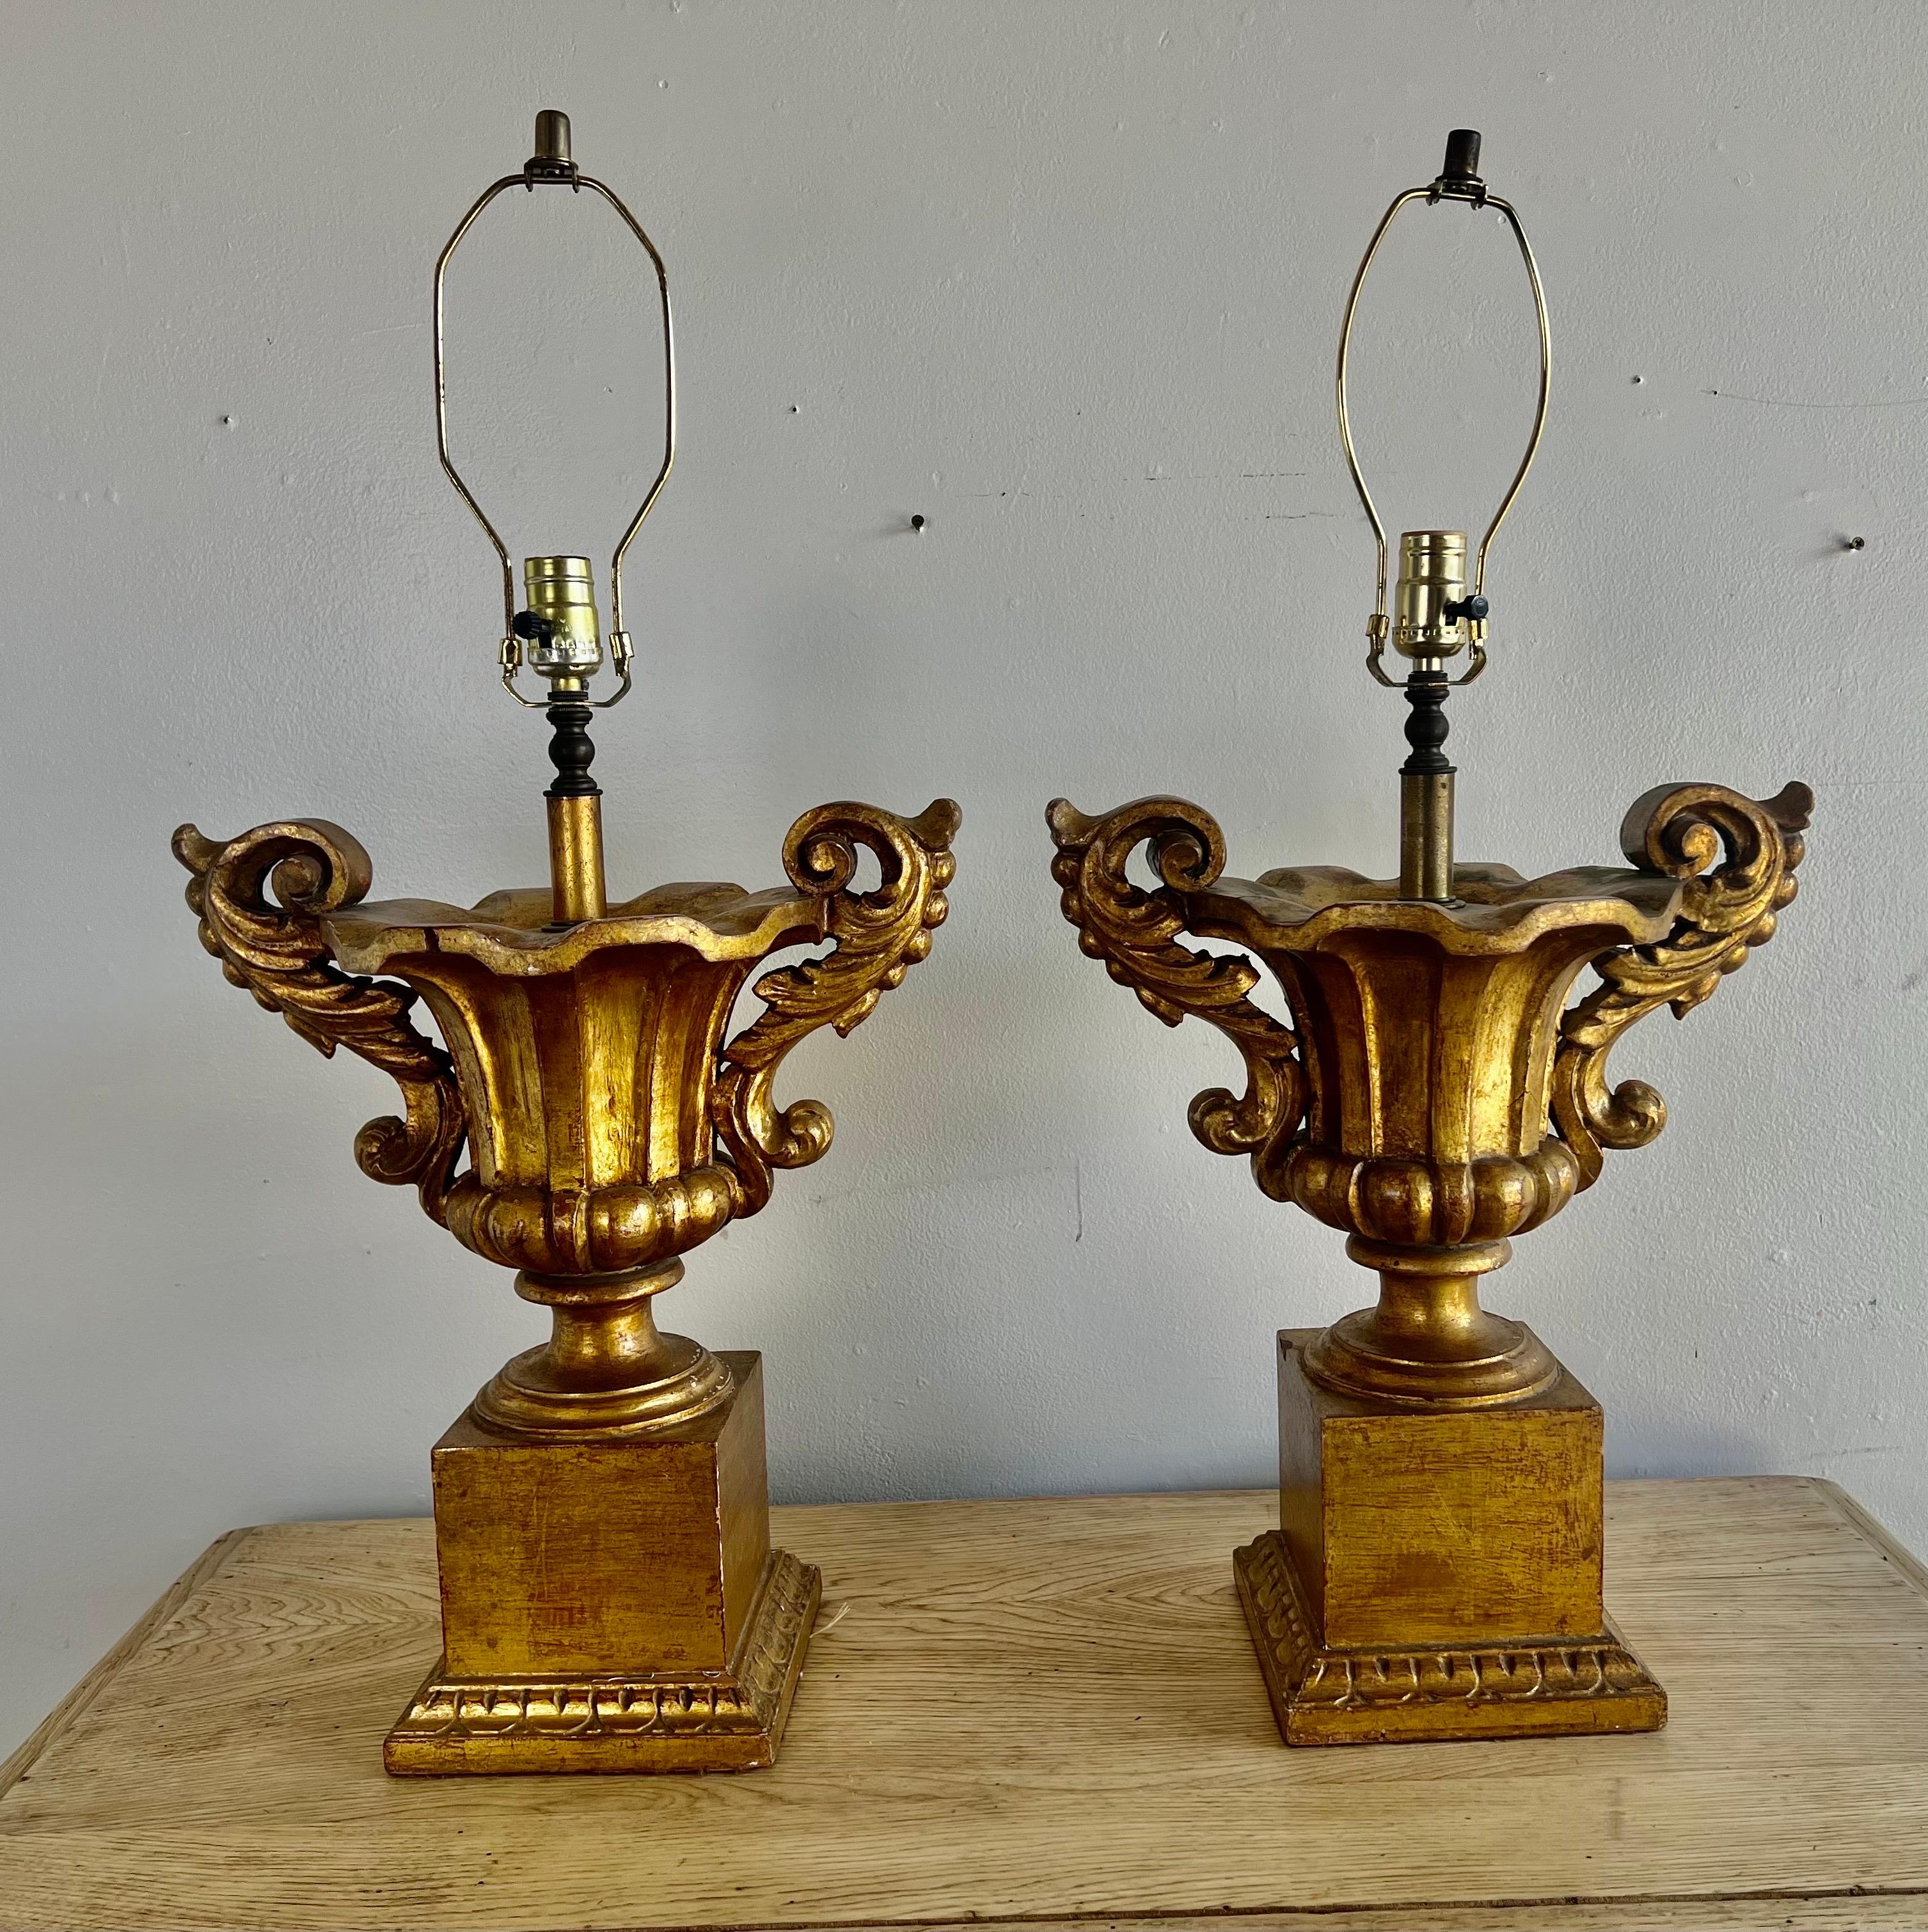 Zwei italienische Urnenlampen aus vergoldetem Holz im neoklassizistischen Stil mit geschnitzten Akanthusblättern.  Die Urnen stehen auf Sockeln.  Die Lampen sind beide funktionstüchtig.